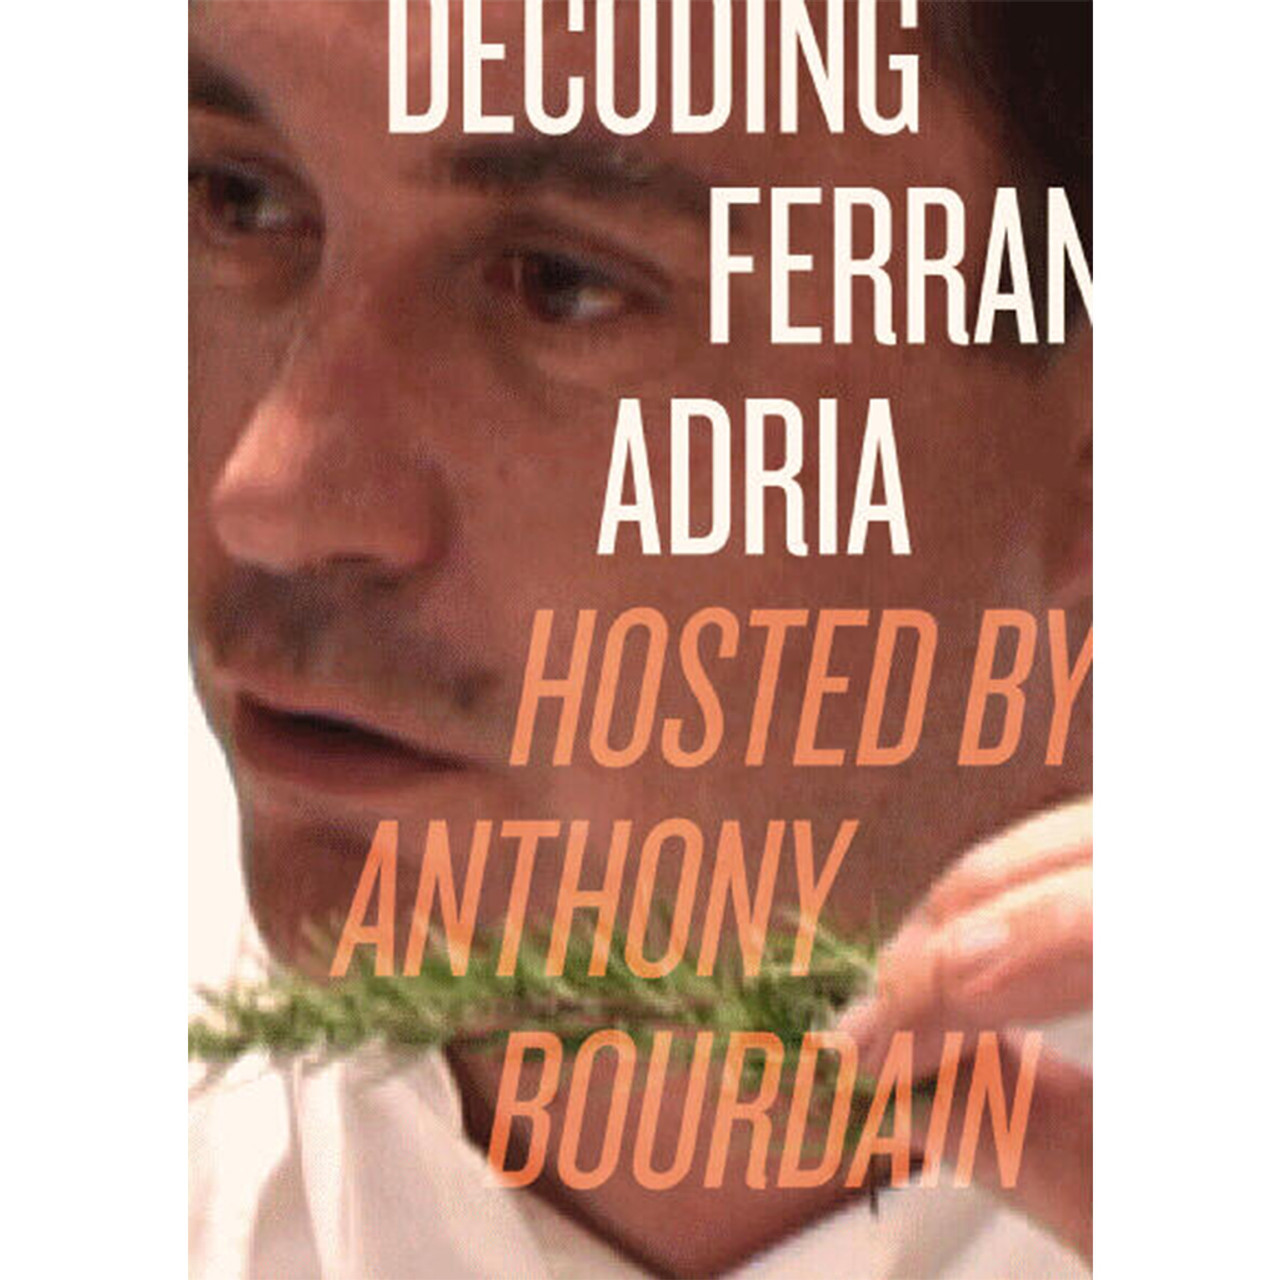 DECODING FERRAN ADRIA BY ANTHONY BOURDAIN